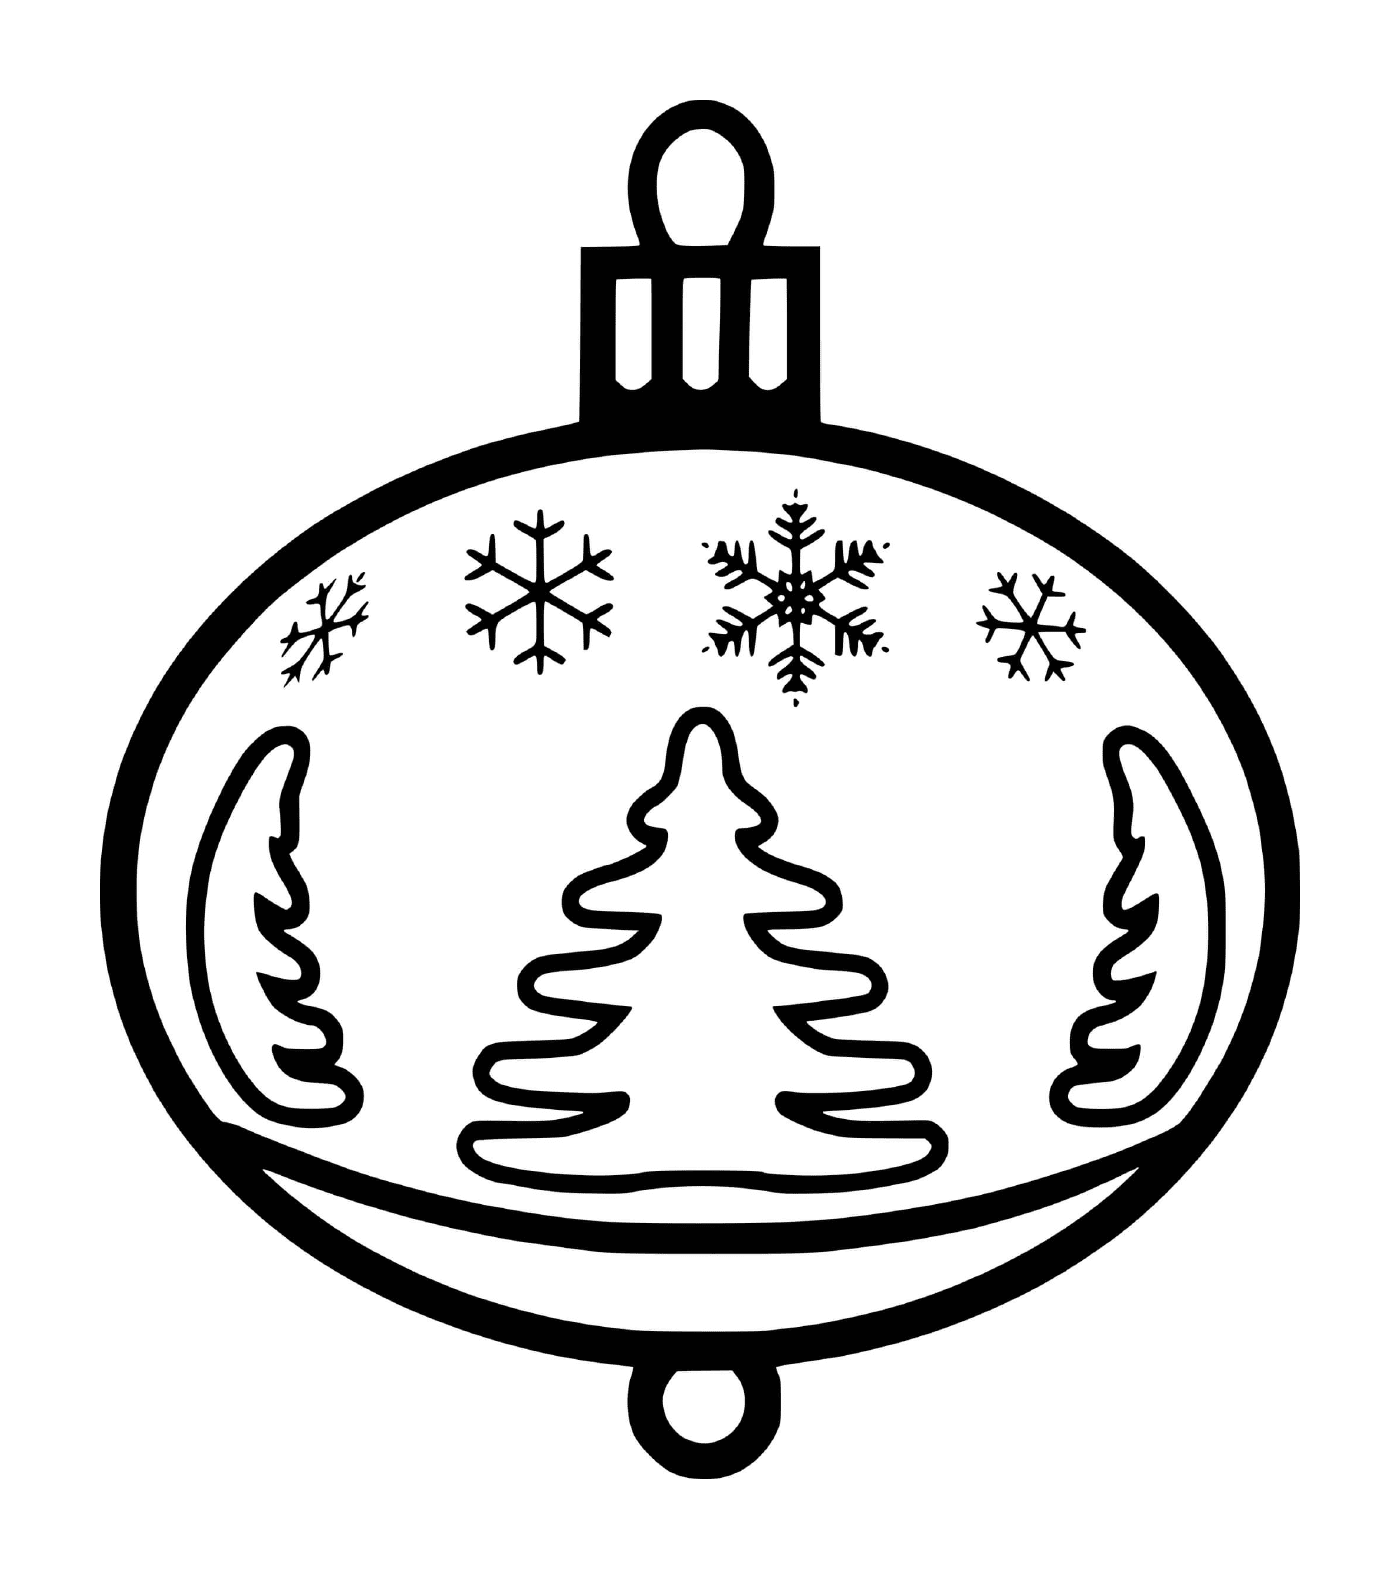   Une boule de Noël avec des flocons de neige et des sapins 